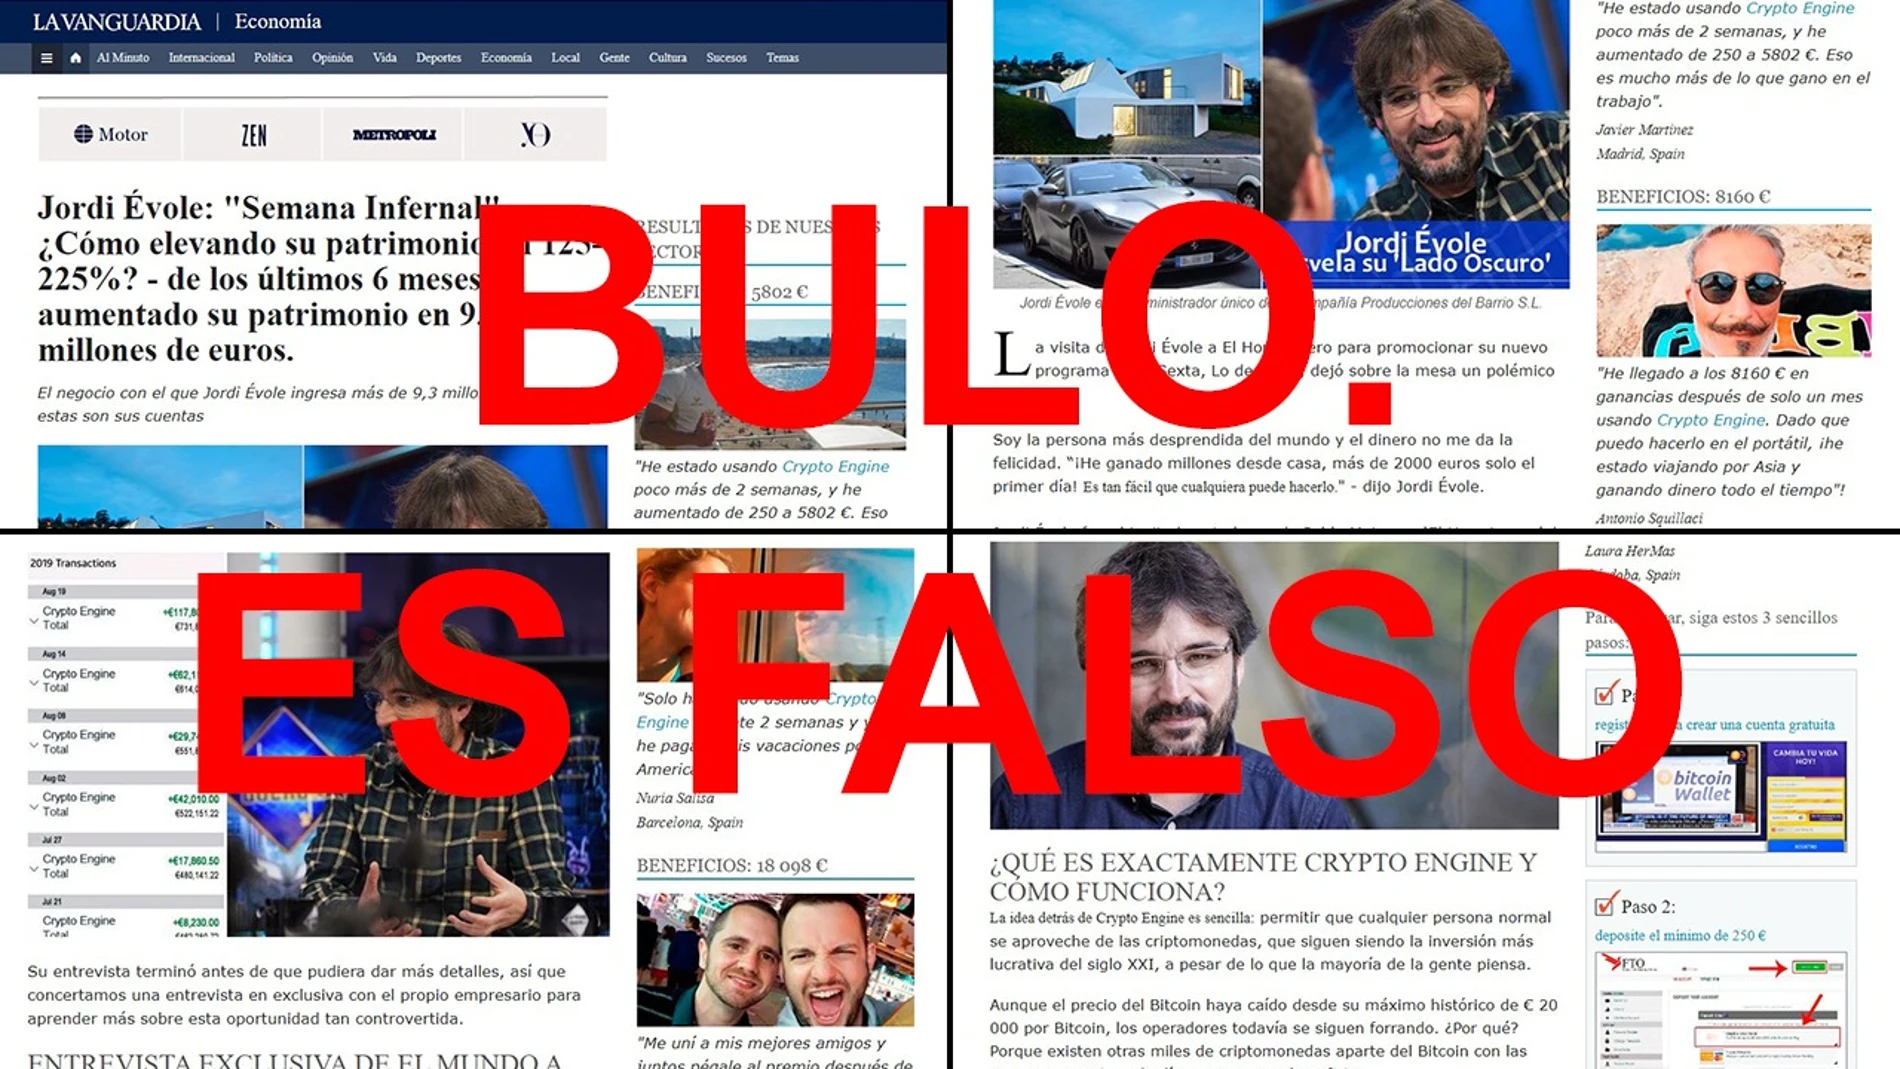 Informaciones falsas que relacionan a Jordi Évole con una estafa de criptomonedas